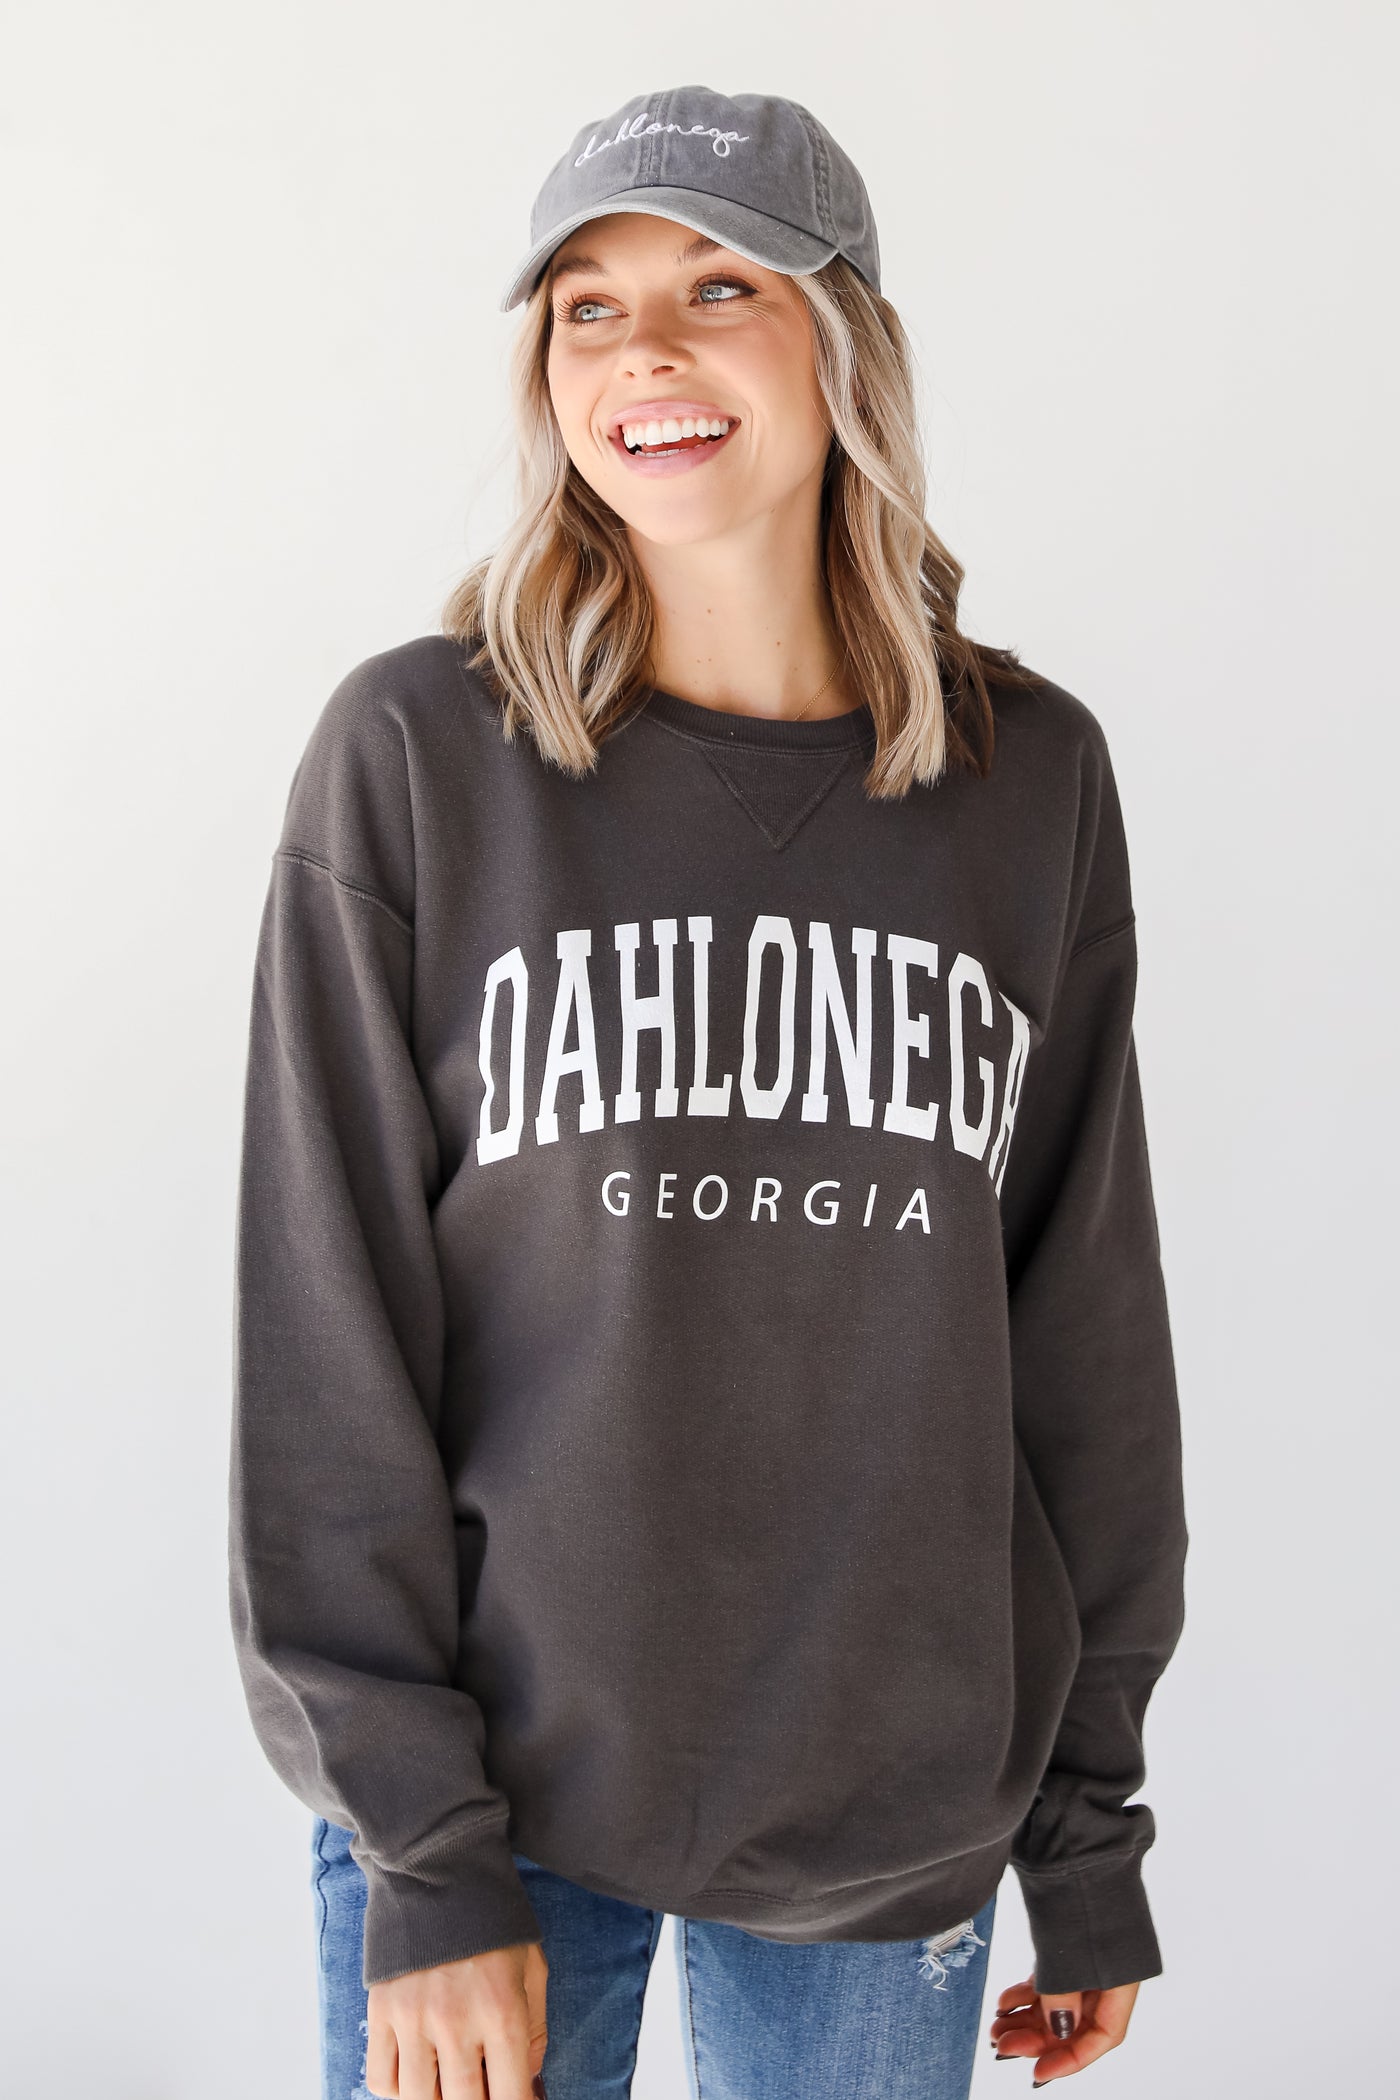 Dahlonega Georgia Pullover. Graphic Sweatshirt. Georgia Sweatshirt. Oversized Comfy Sweatshirt